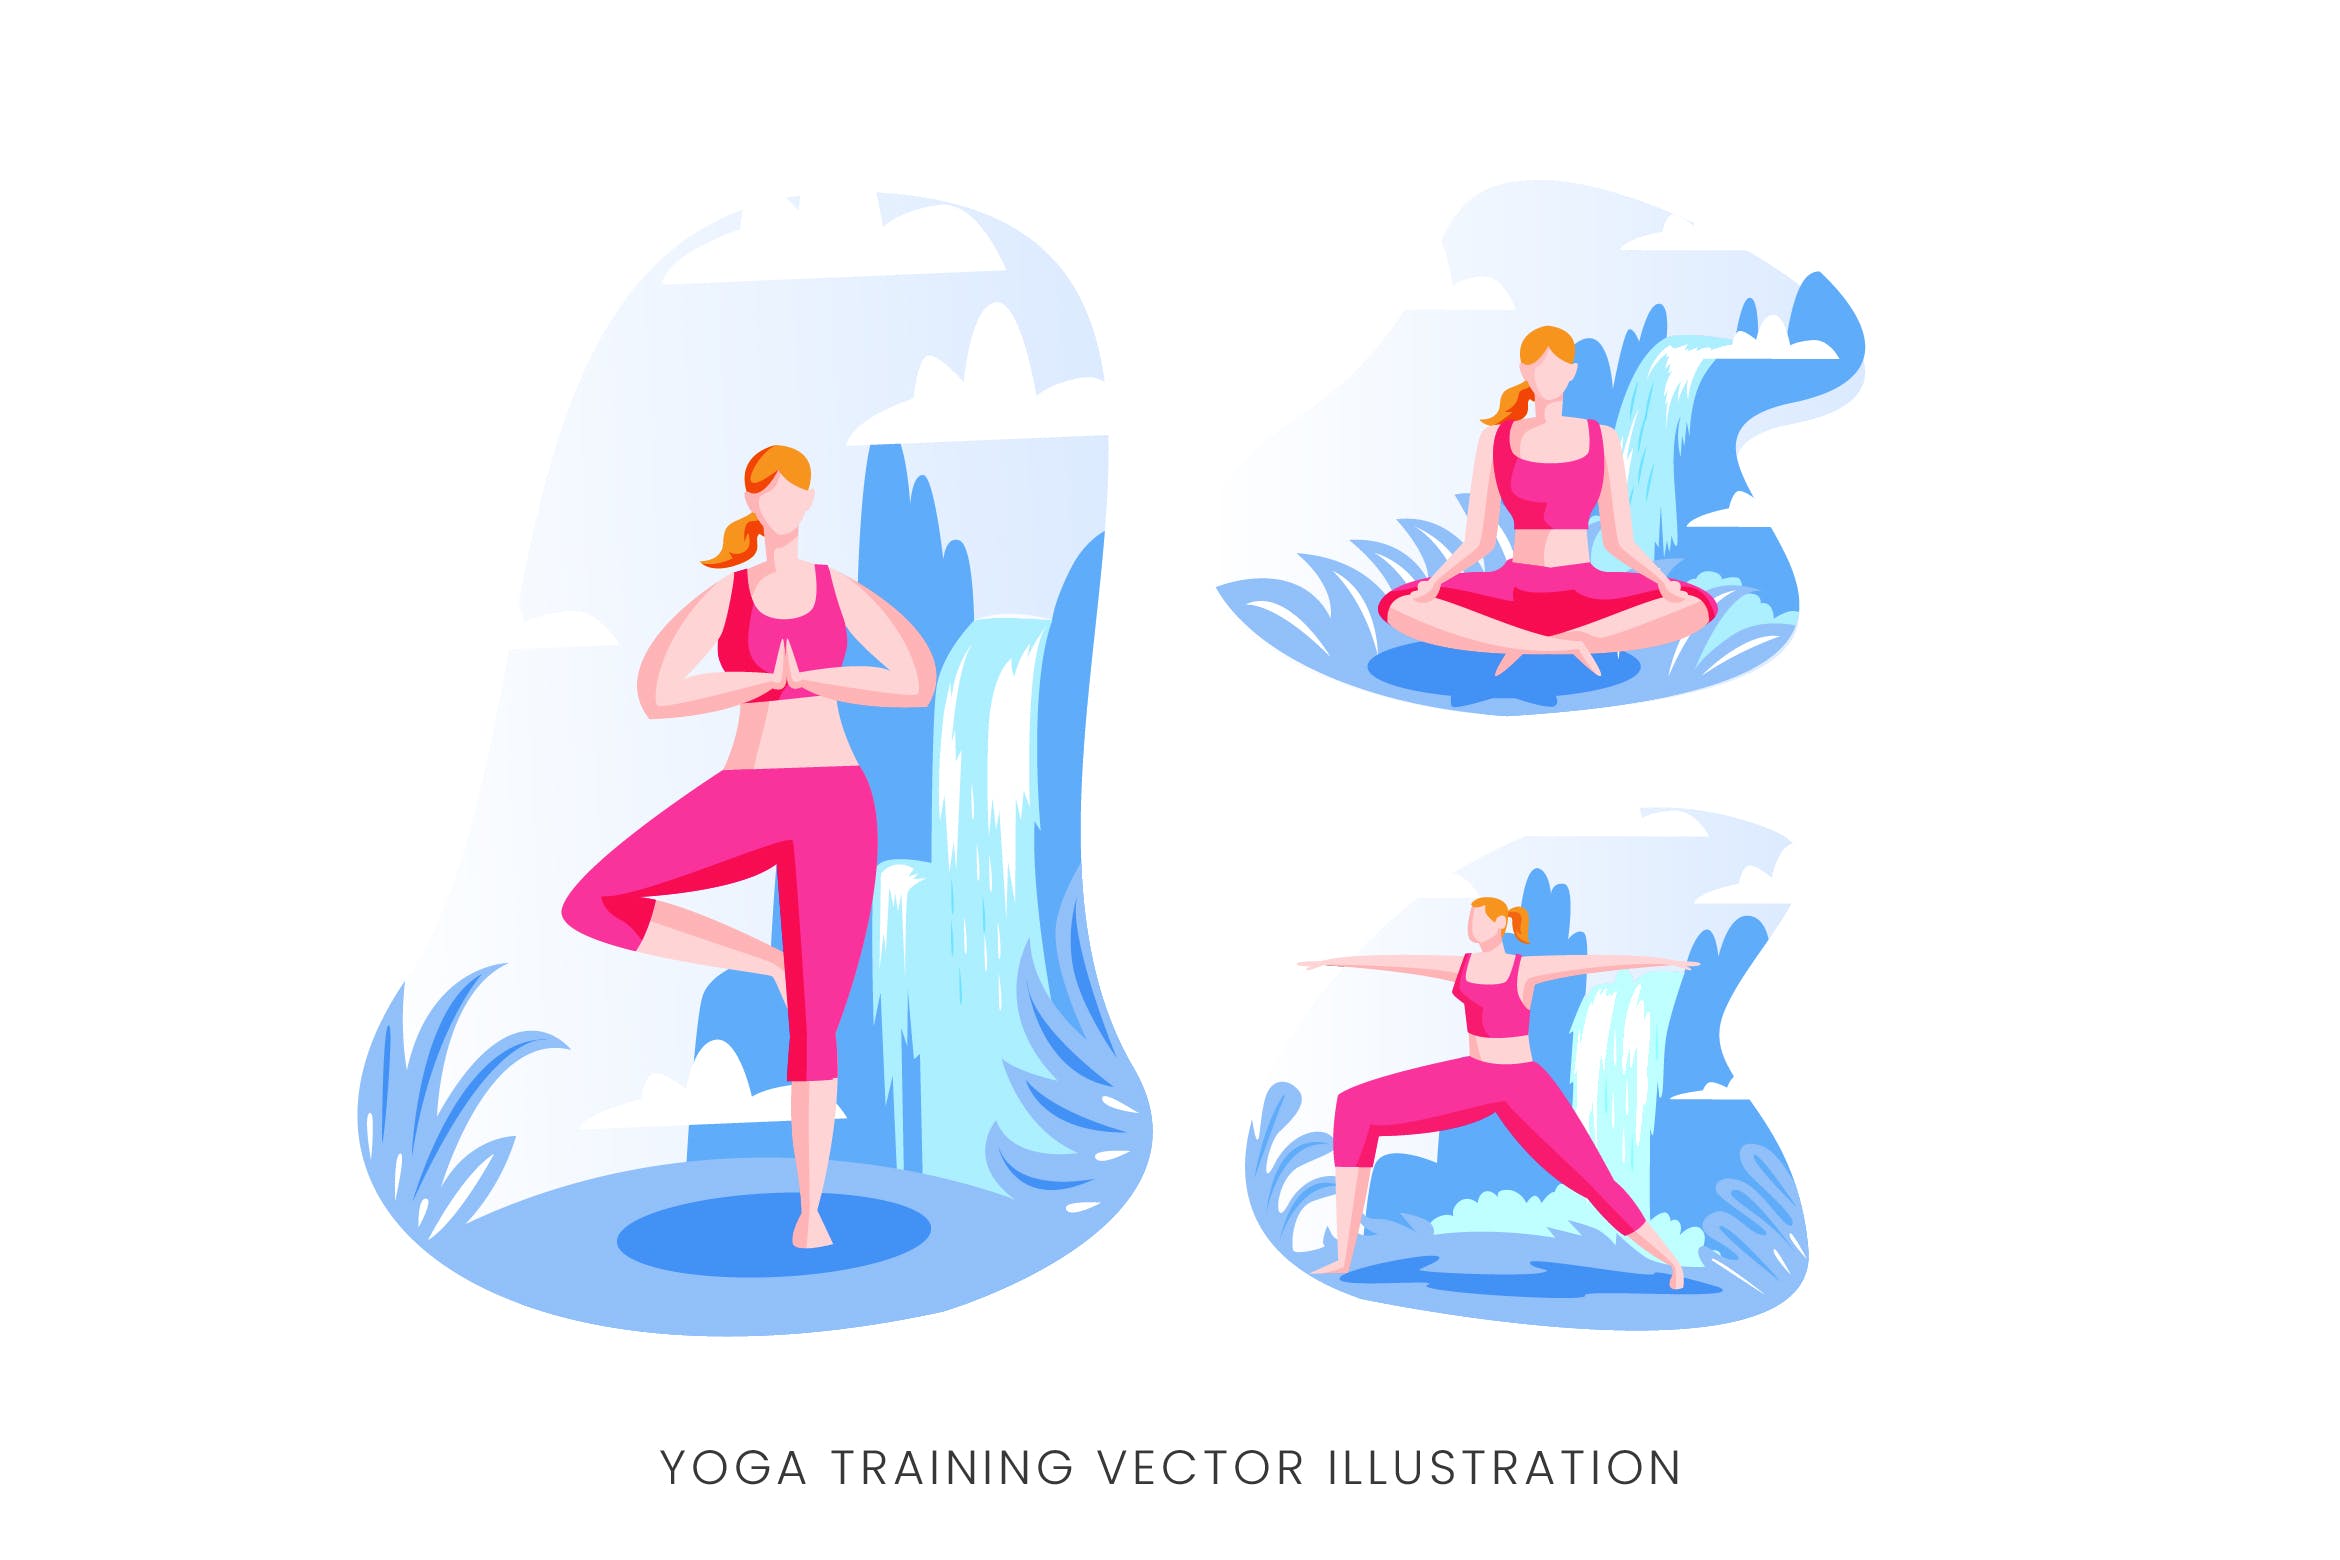 瑜伽训练人物形象矢量手绘普贤居精选设计素材 Yoga Training Vector Character Set插图